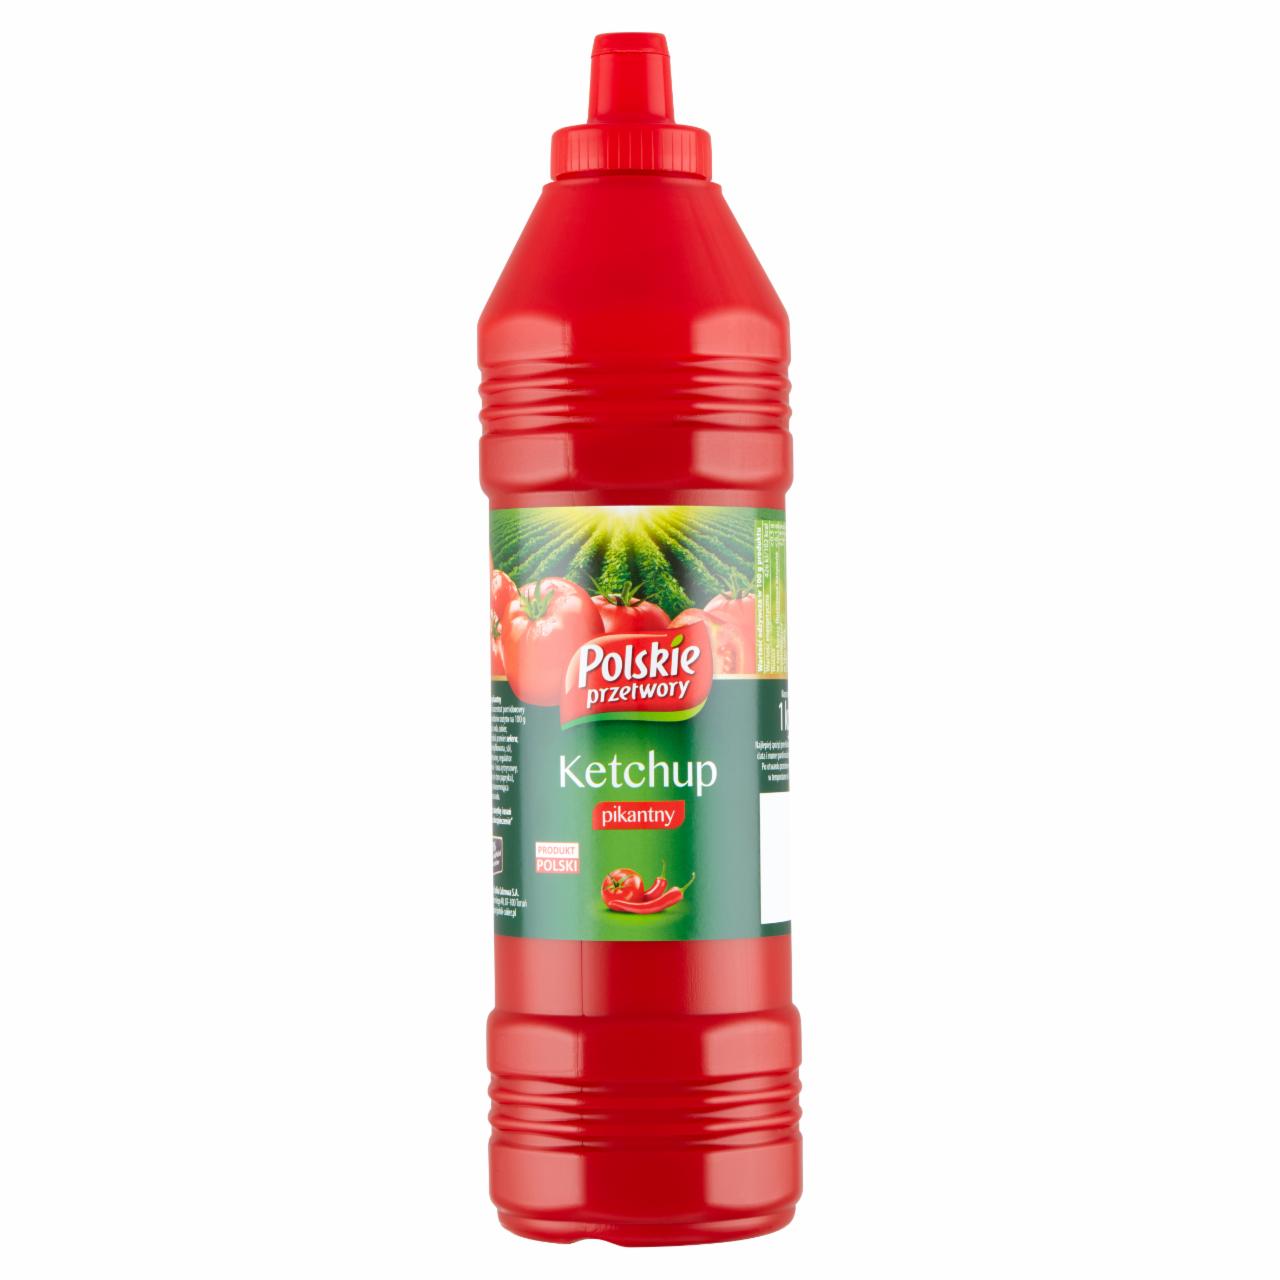 Zdjęcia - Polskie przetwory Ketchup pikantny 1 kg